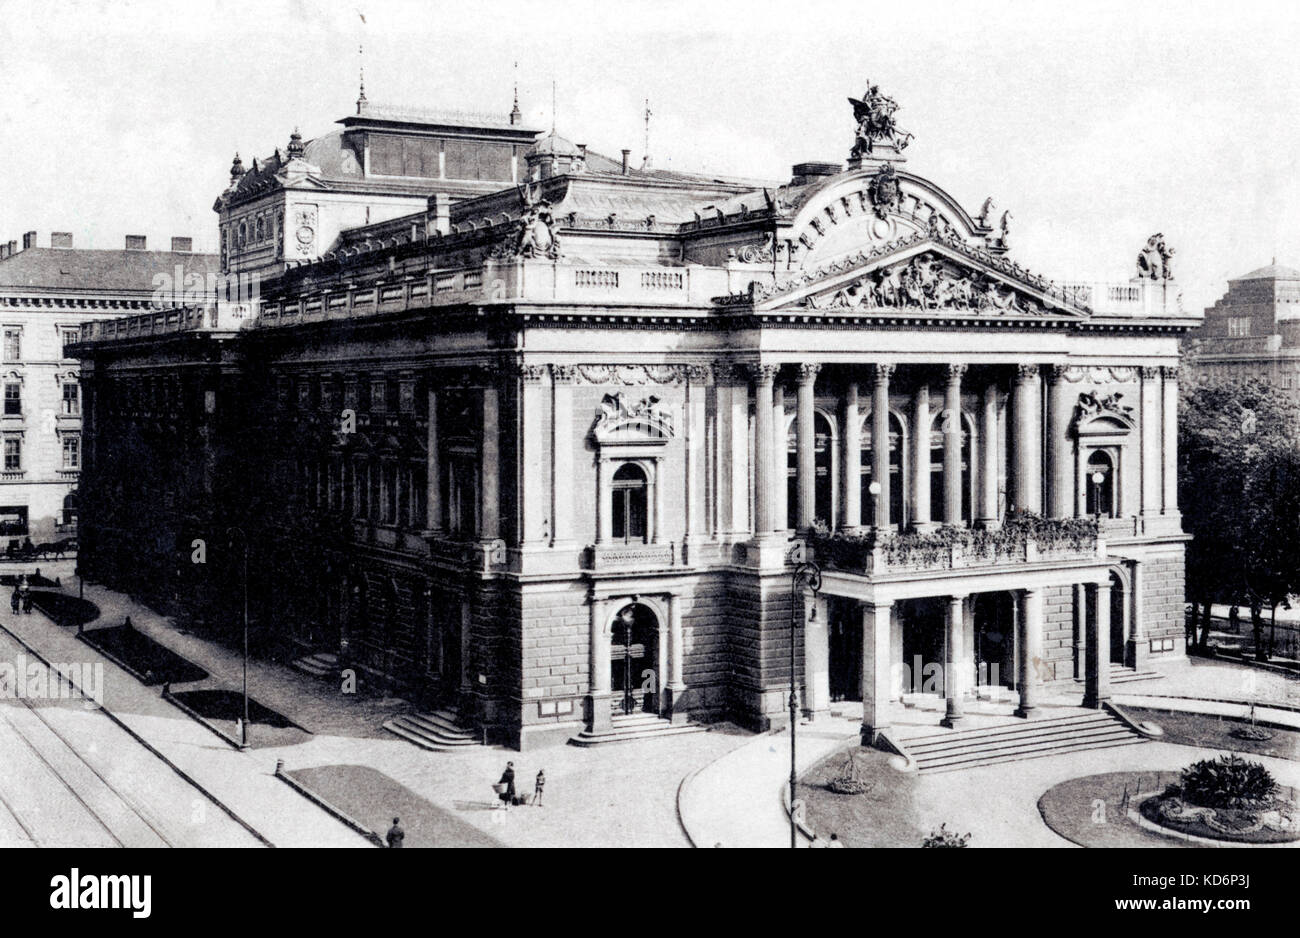 Théâtre national tchèque à Brno où "Jenufa" de Janacek a été présentée pour la première fois (21 janvier 1904). Janacek connexion. Banque D'Images